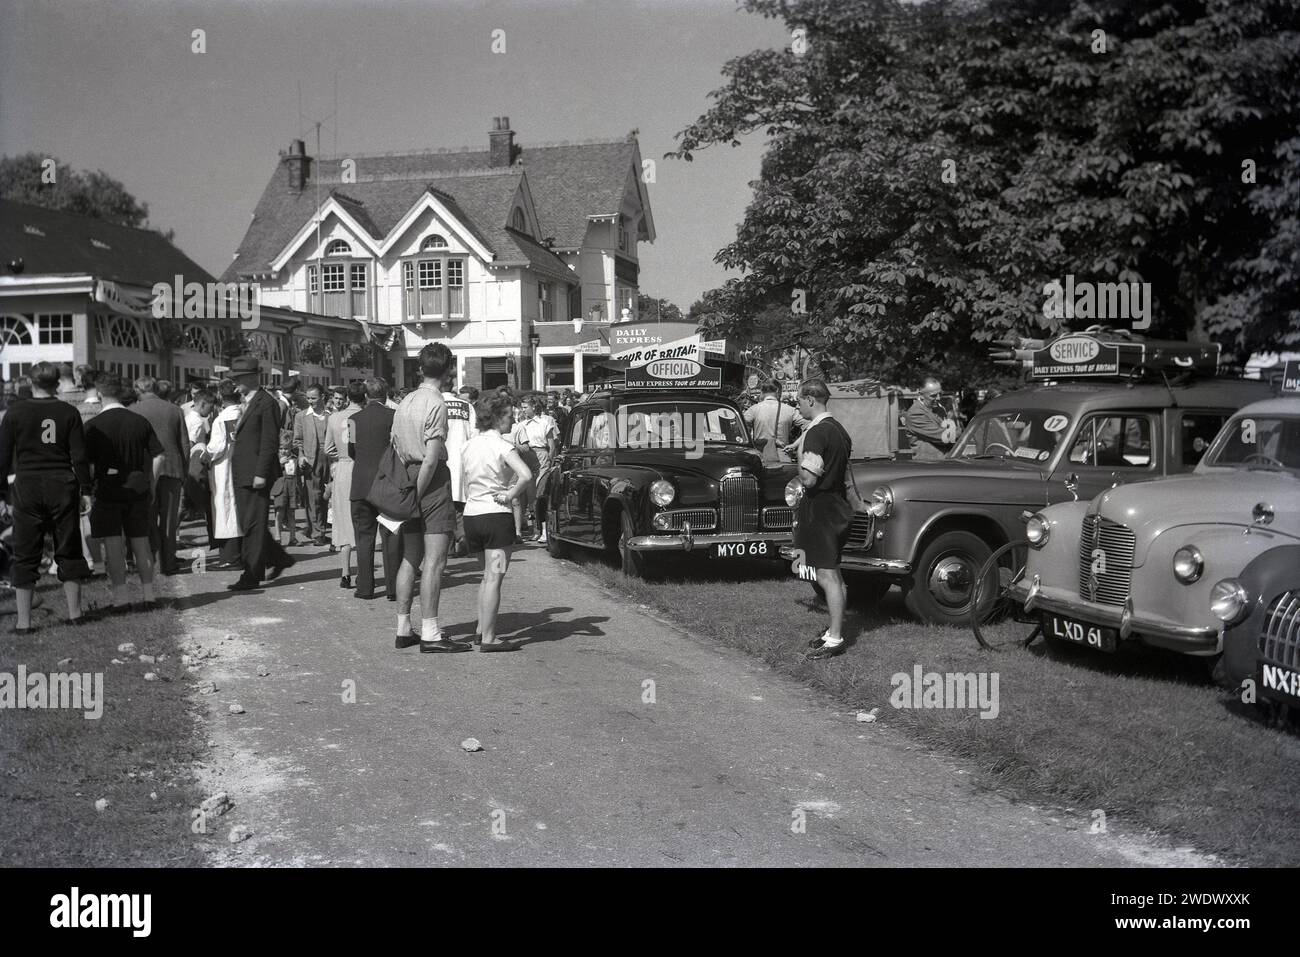 1952, storia, gente che si riunisce all'inizio di una tappa della corsa ciclistica dilettante Daily Express Tour of Britain, Inghilterra, Regno Unito. Nella foto sono illustrate le vetture ufficiali e un veicolo di servizio, con i bagagli sul portapacchi. Foto Stock